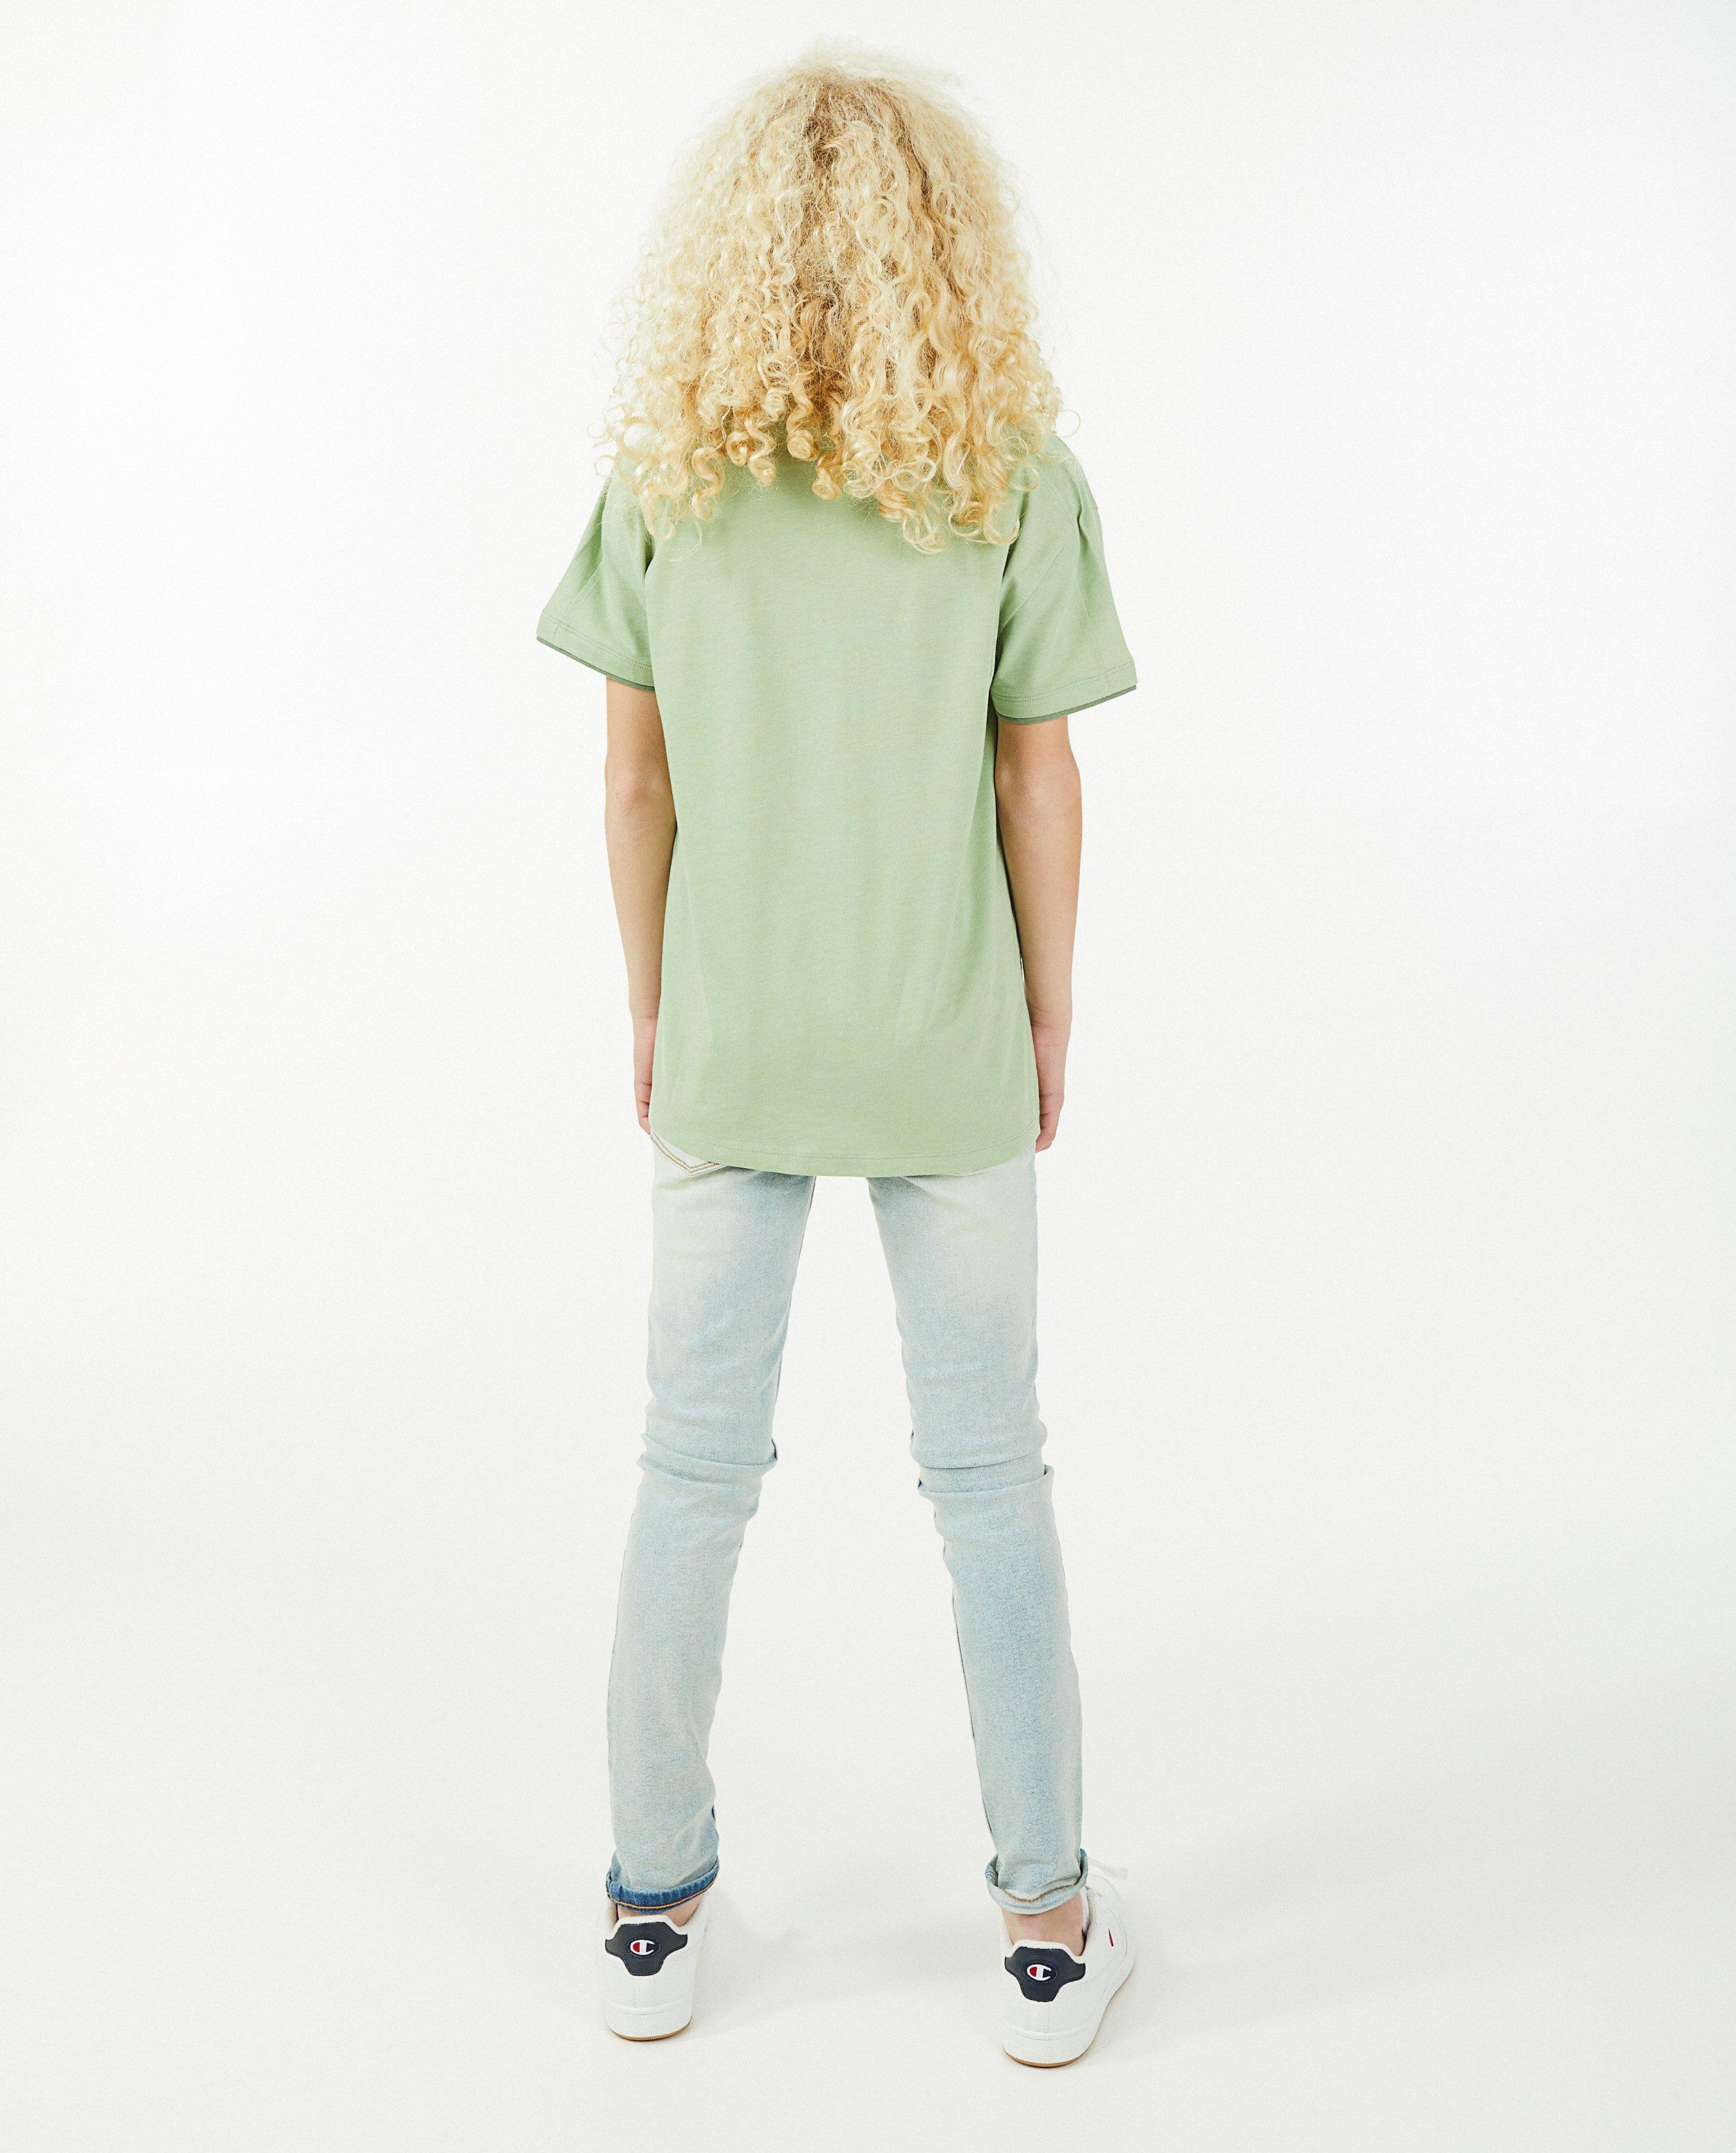 Groen T-shirt #LikeMe - null - Like Me